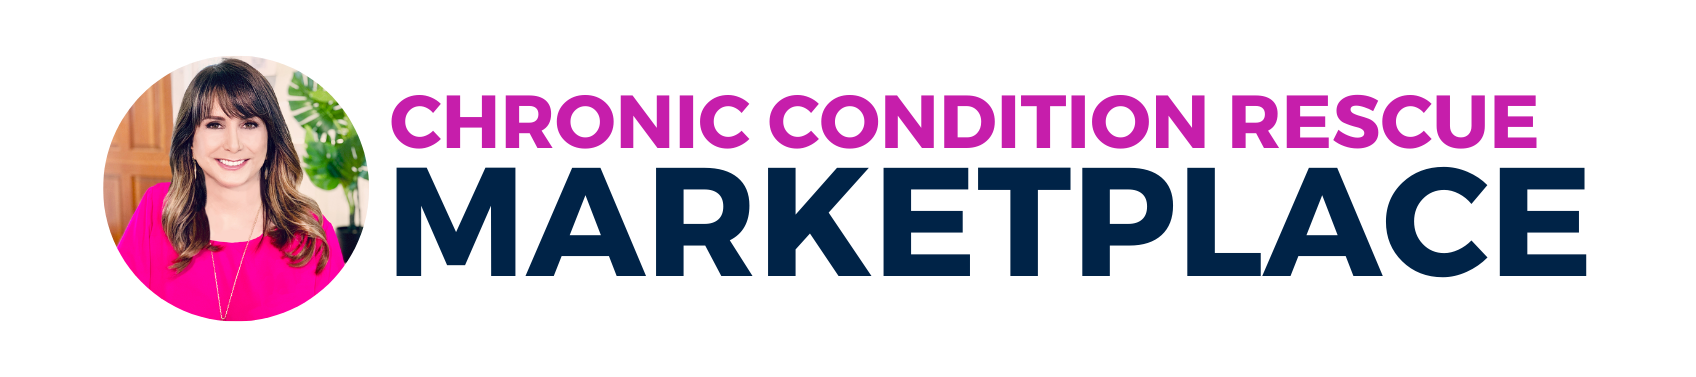 CCR Marketplace Logo